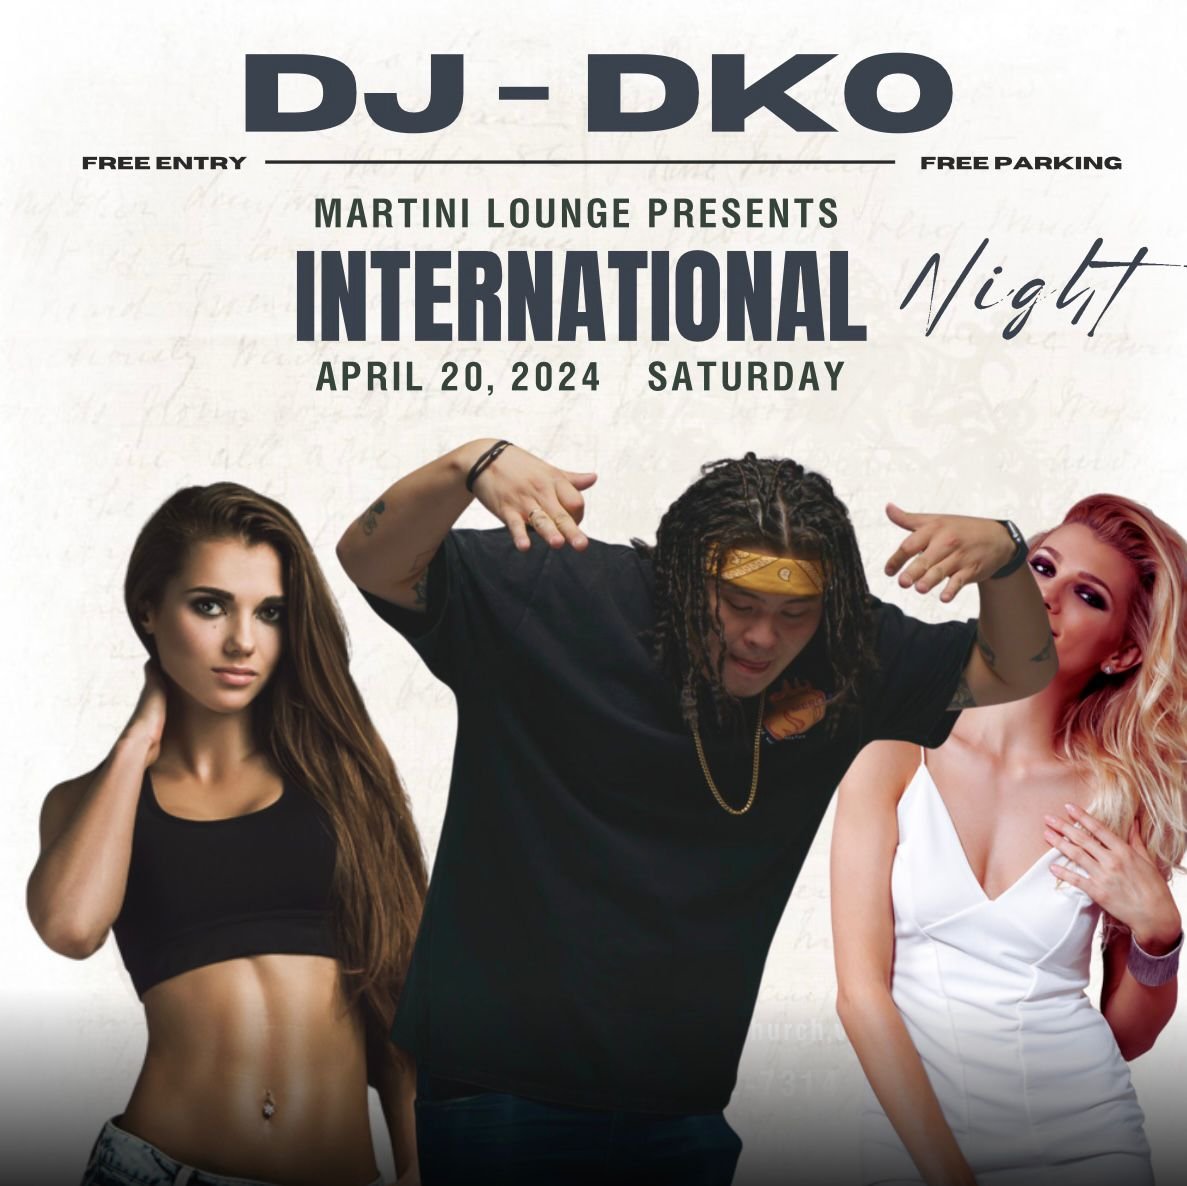 DJ-DKO